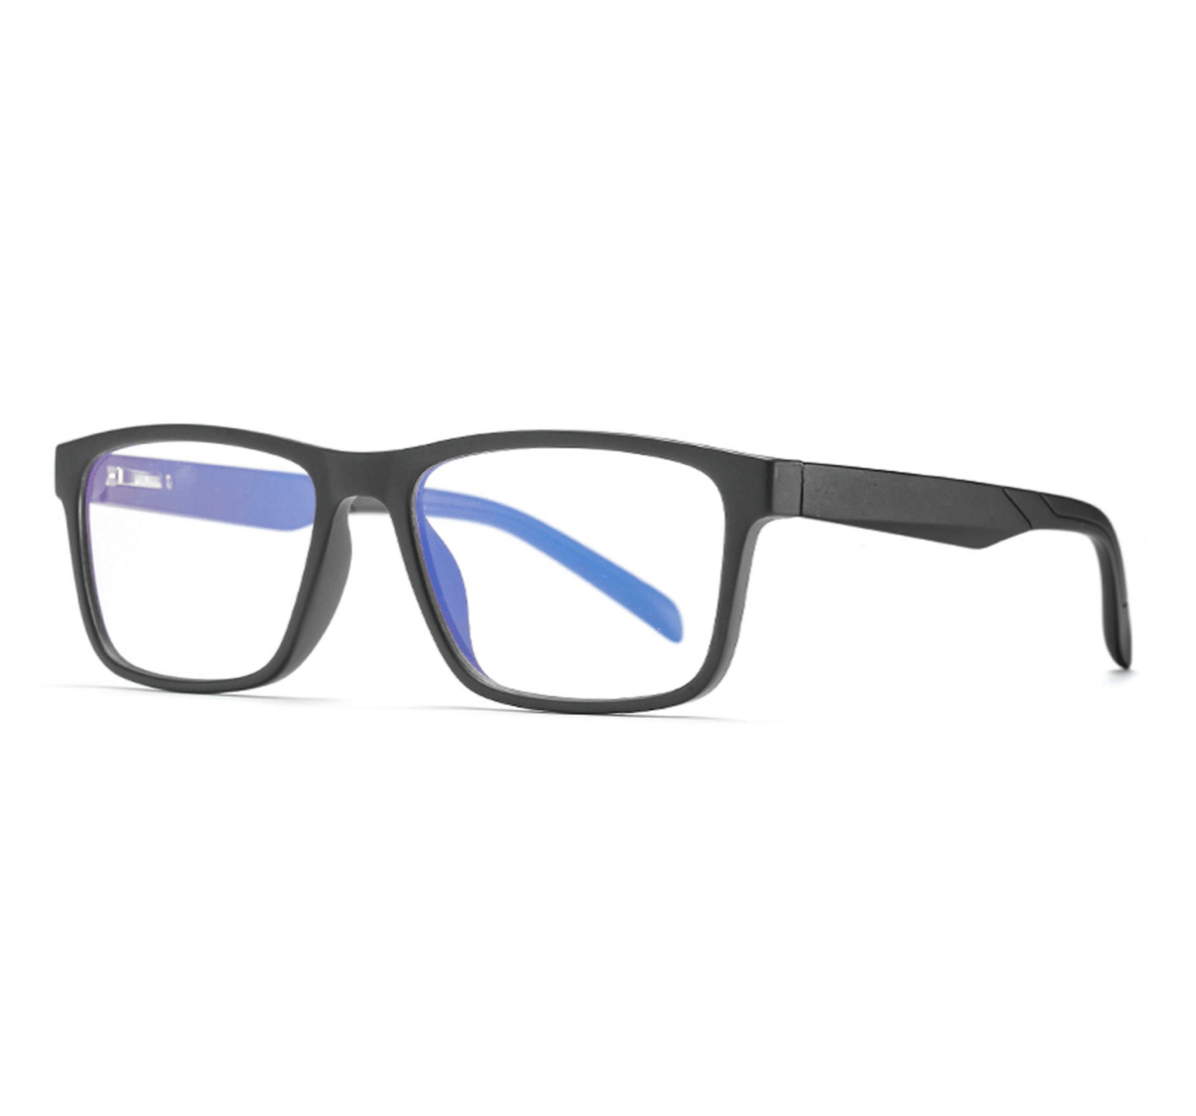 square TR90 blue light glasses bulk, wholesale blue light glasses, blue light glasses supplier, blue light glasses China